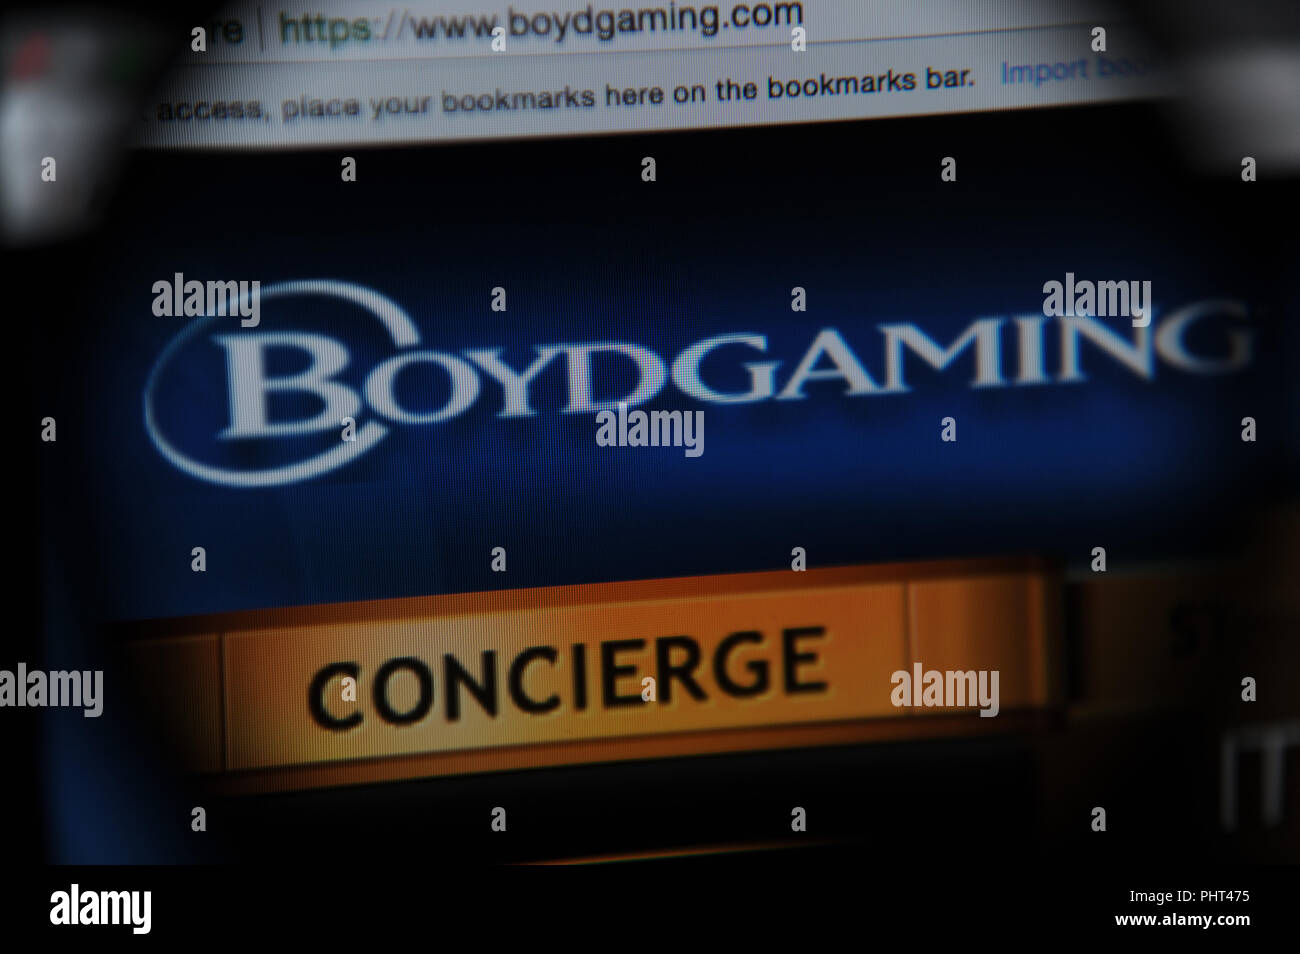 Boyd Gaming Website durch ein Vergrößerungsglas gesehen Stockfoto